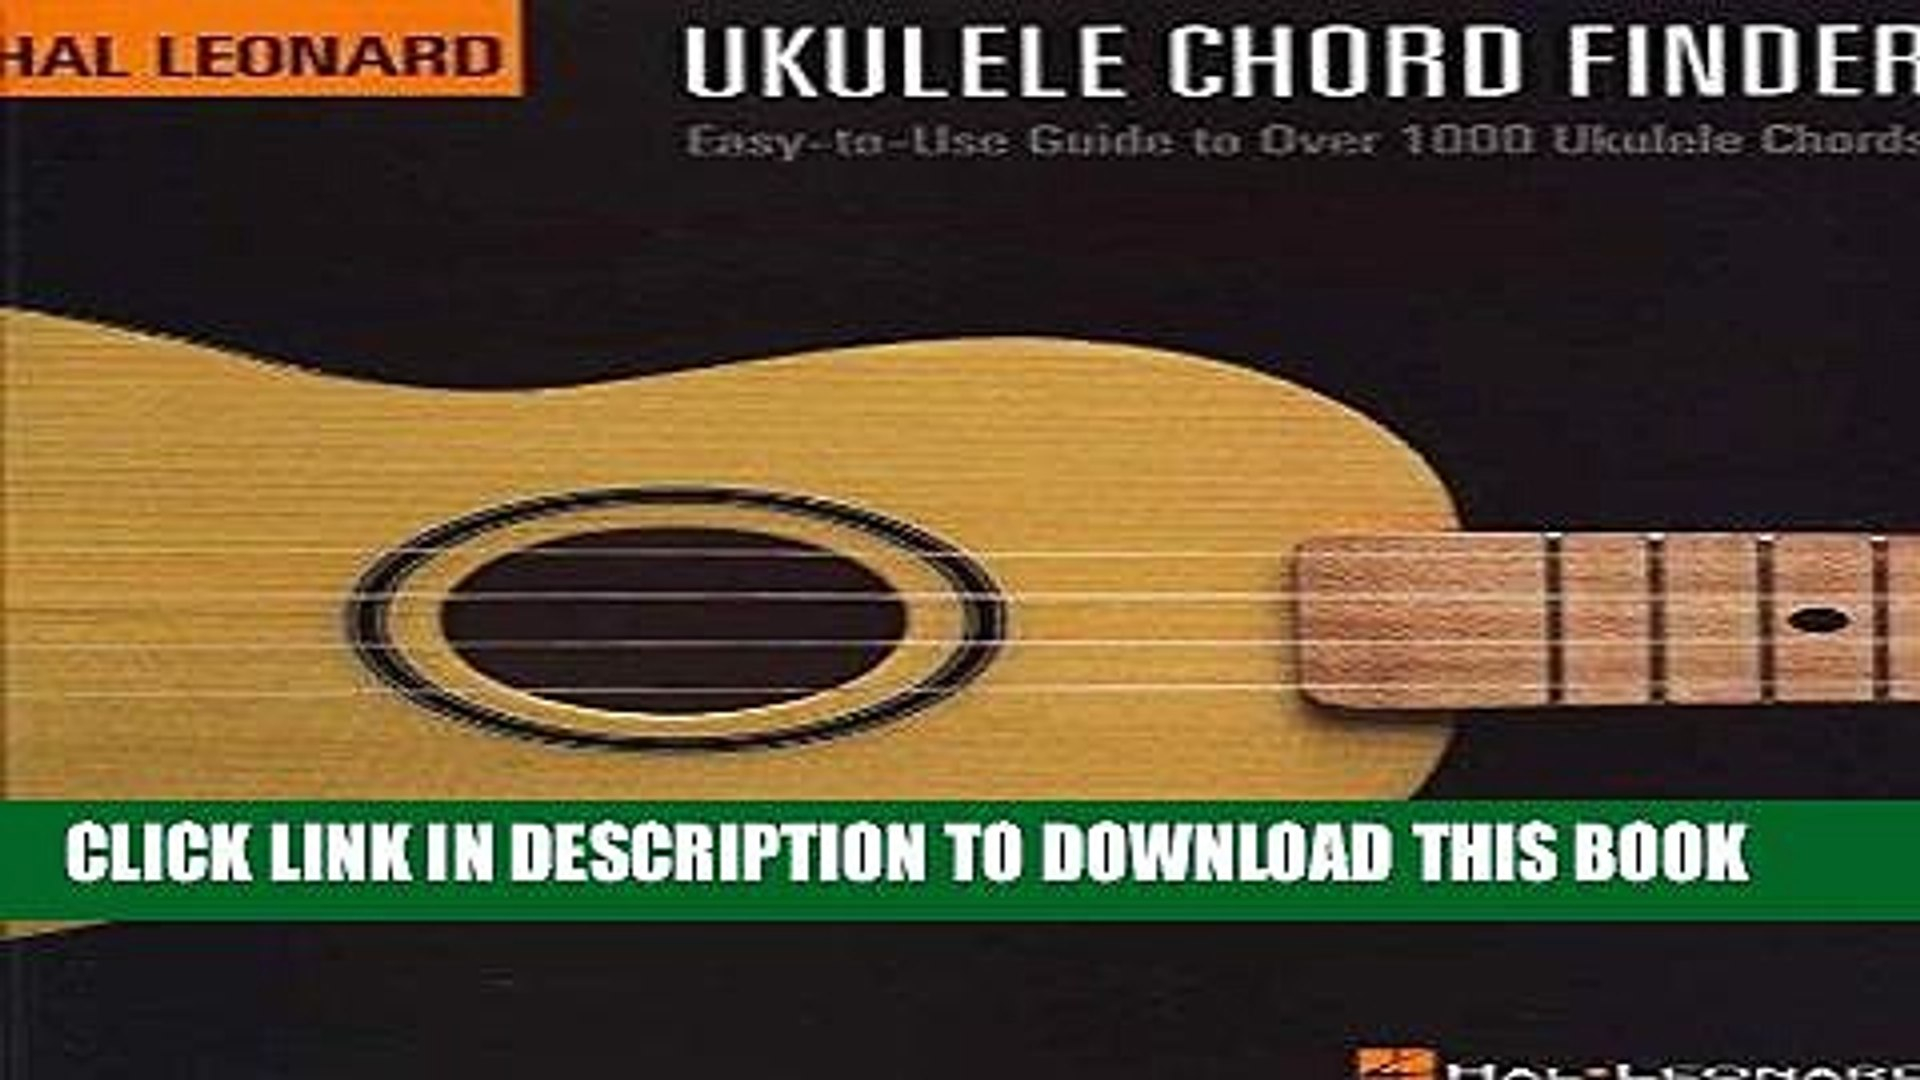 Guitar Chord Finder Download Epub Hal Leonard Ukulele Chord Finder Easy To Use Guide To Over 1000 Ukulele Chords